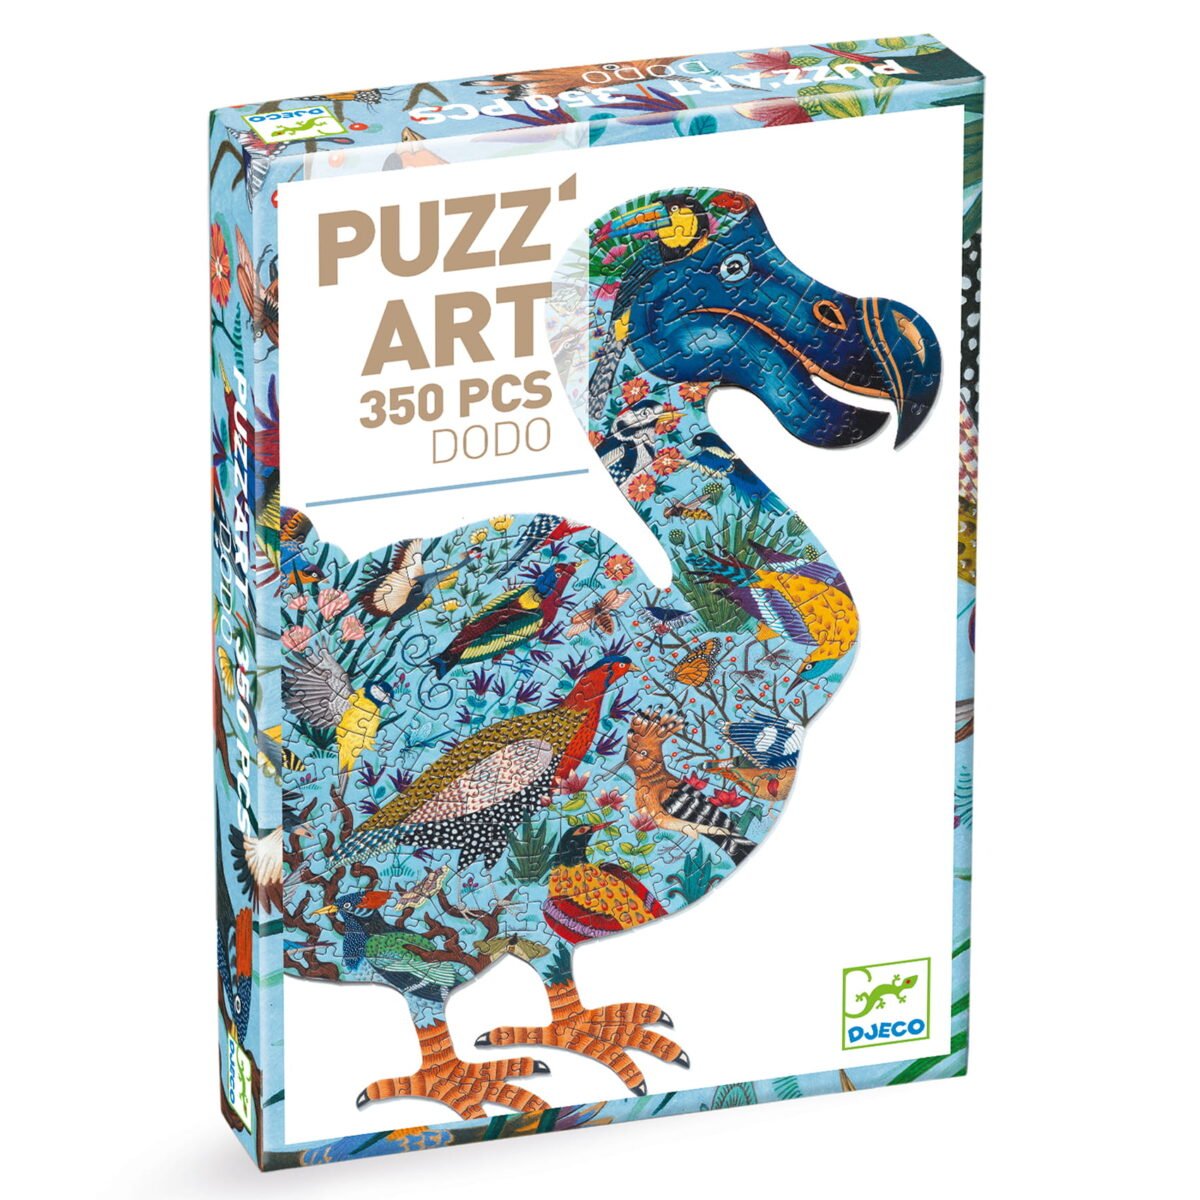 Djeco Puzzle Artystyczne Dodo 350 Elementów  Dj07656 Dla Dzieci